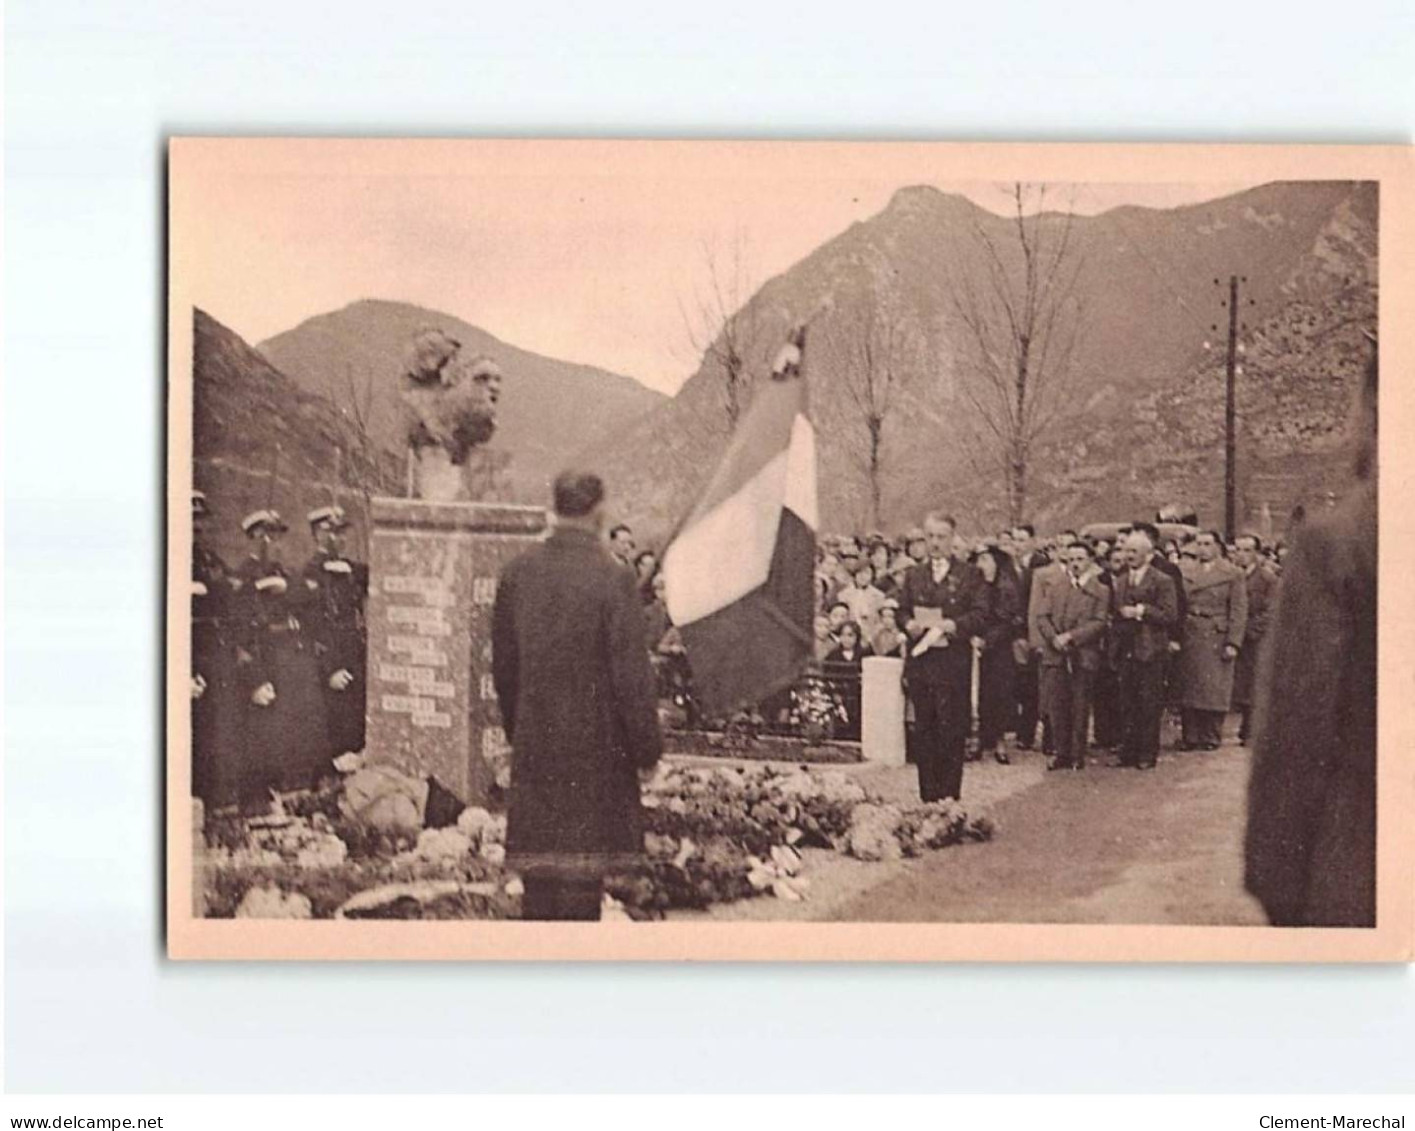 Inauguration du Monument aux morts de CAPOULET-JUNAC, 17 Novembre 1935, Lot de 14 CPA - très bon état